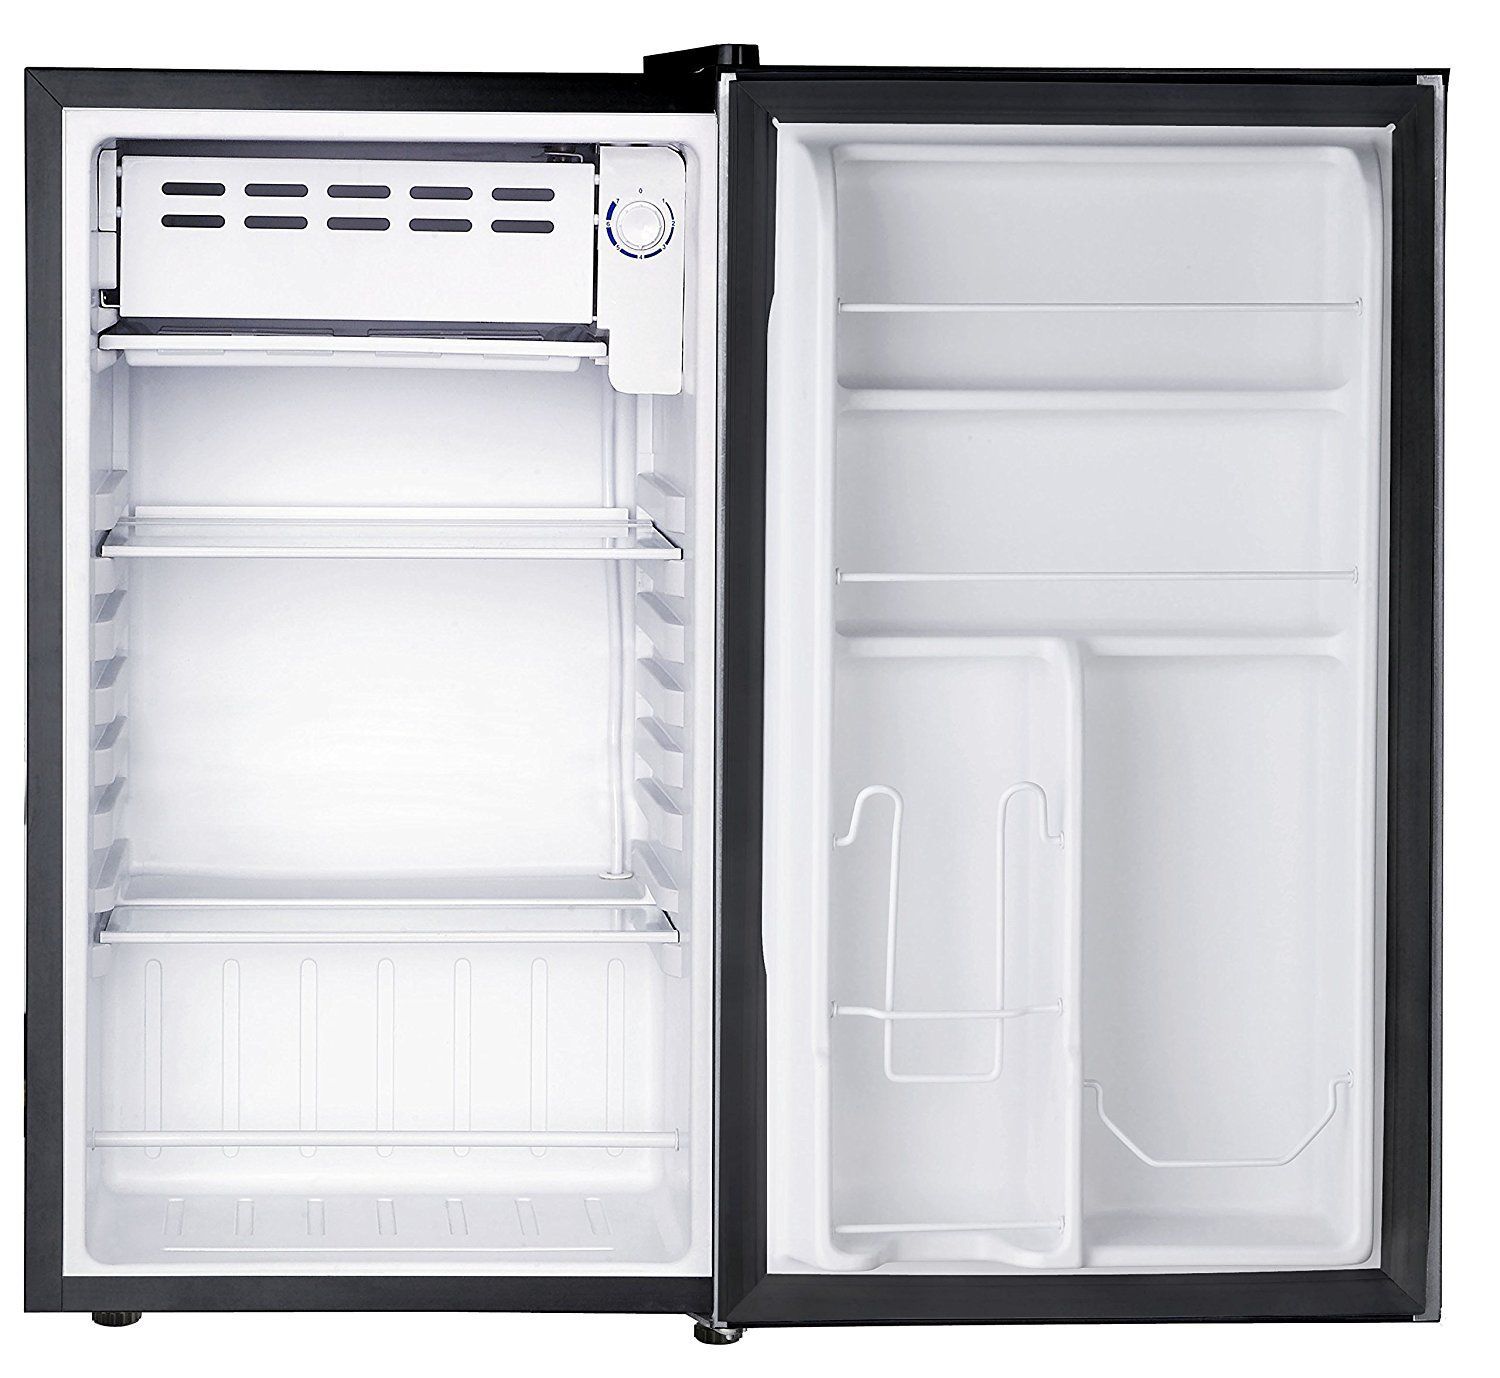 3. dalam bagian freezer, kulkas satu pintu